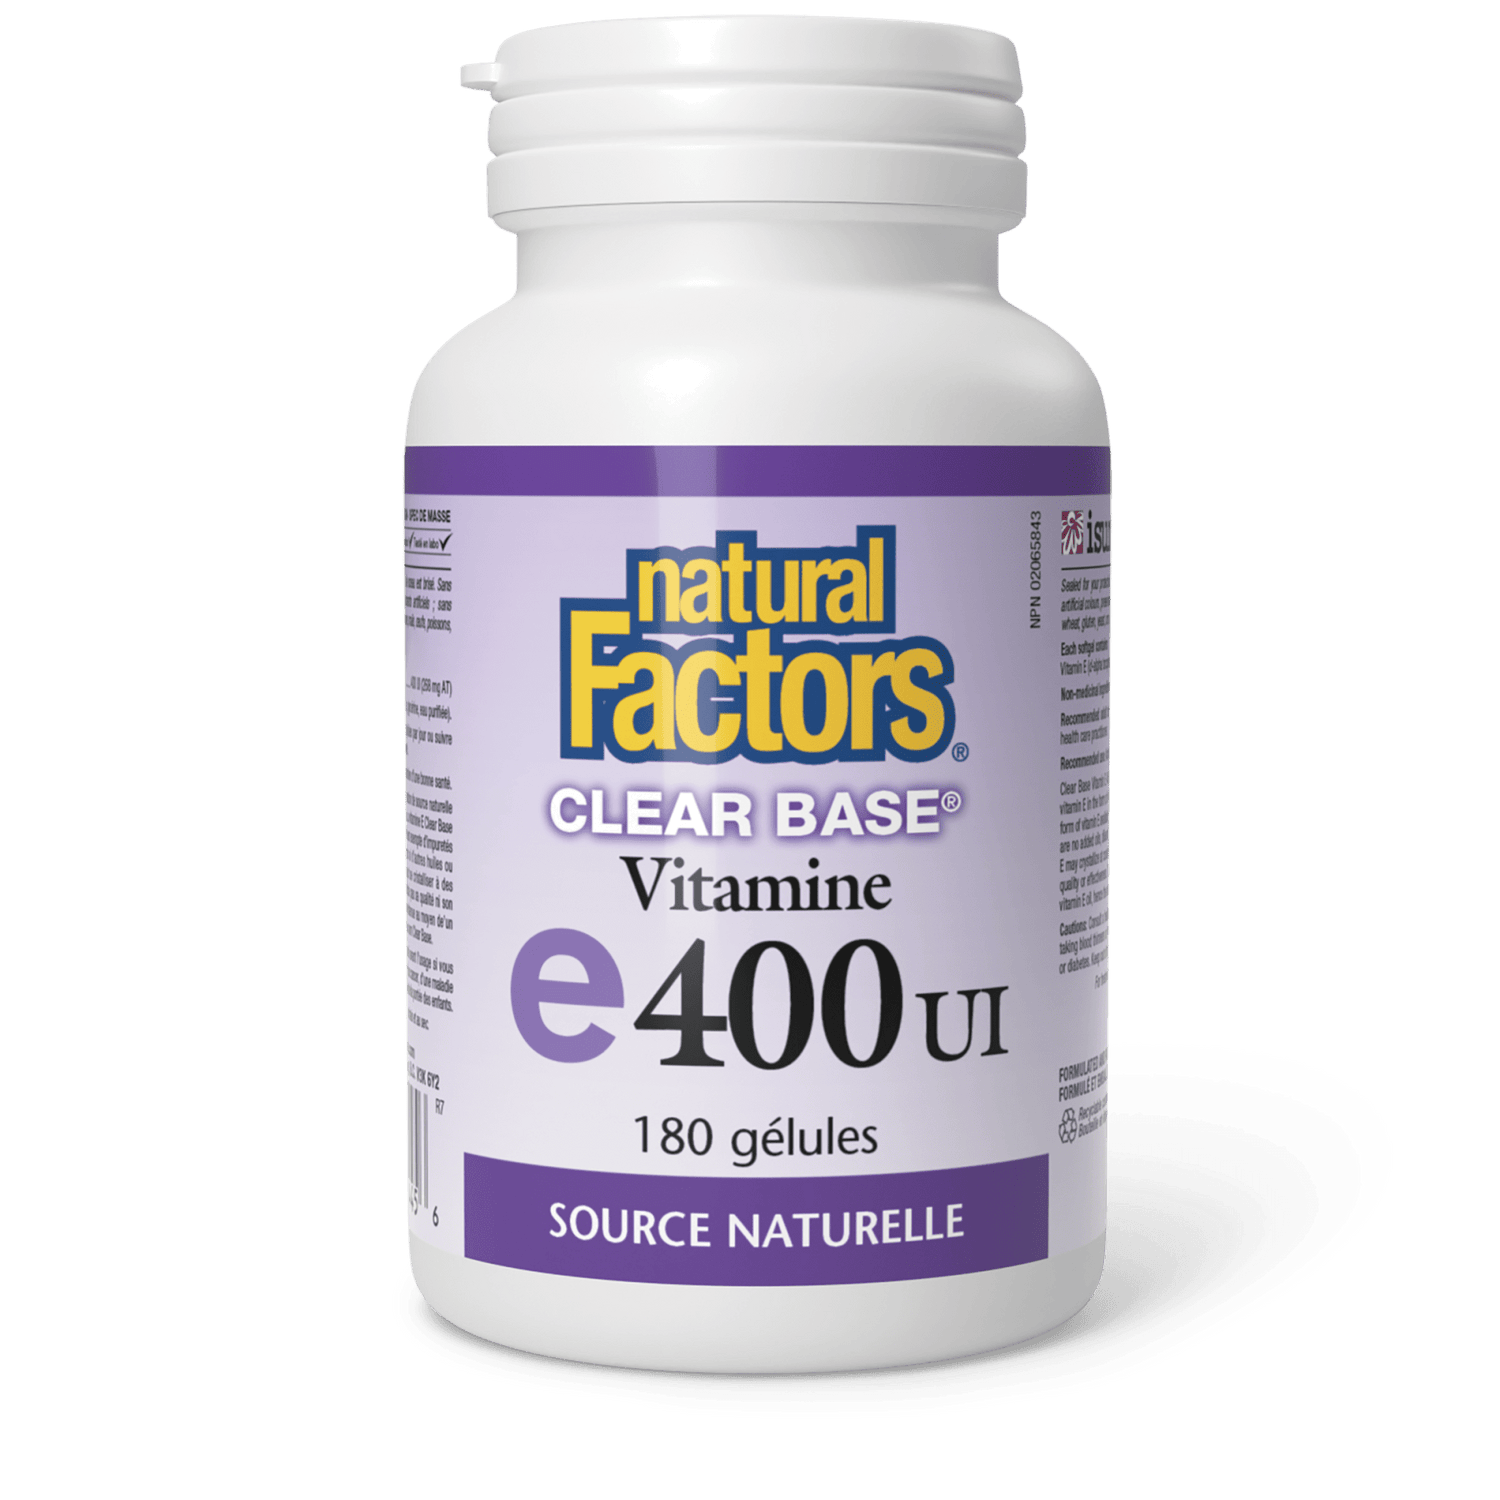 Vitamine E Clear BaseMD 400 UI, source naturelle, Natural Factors|v|image|1445